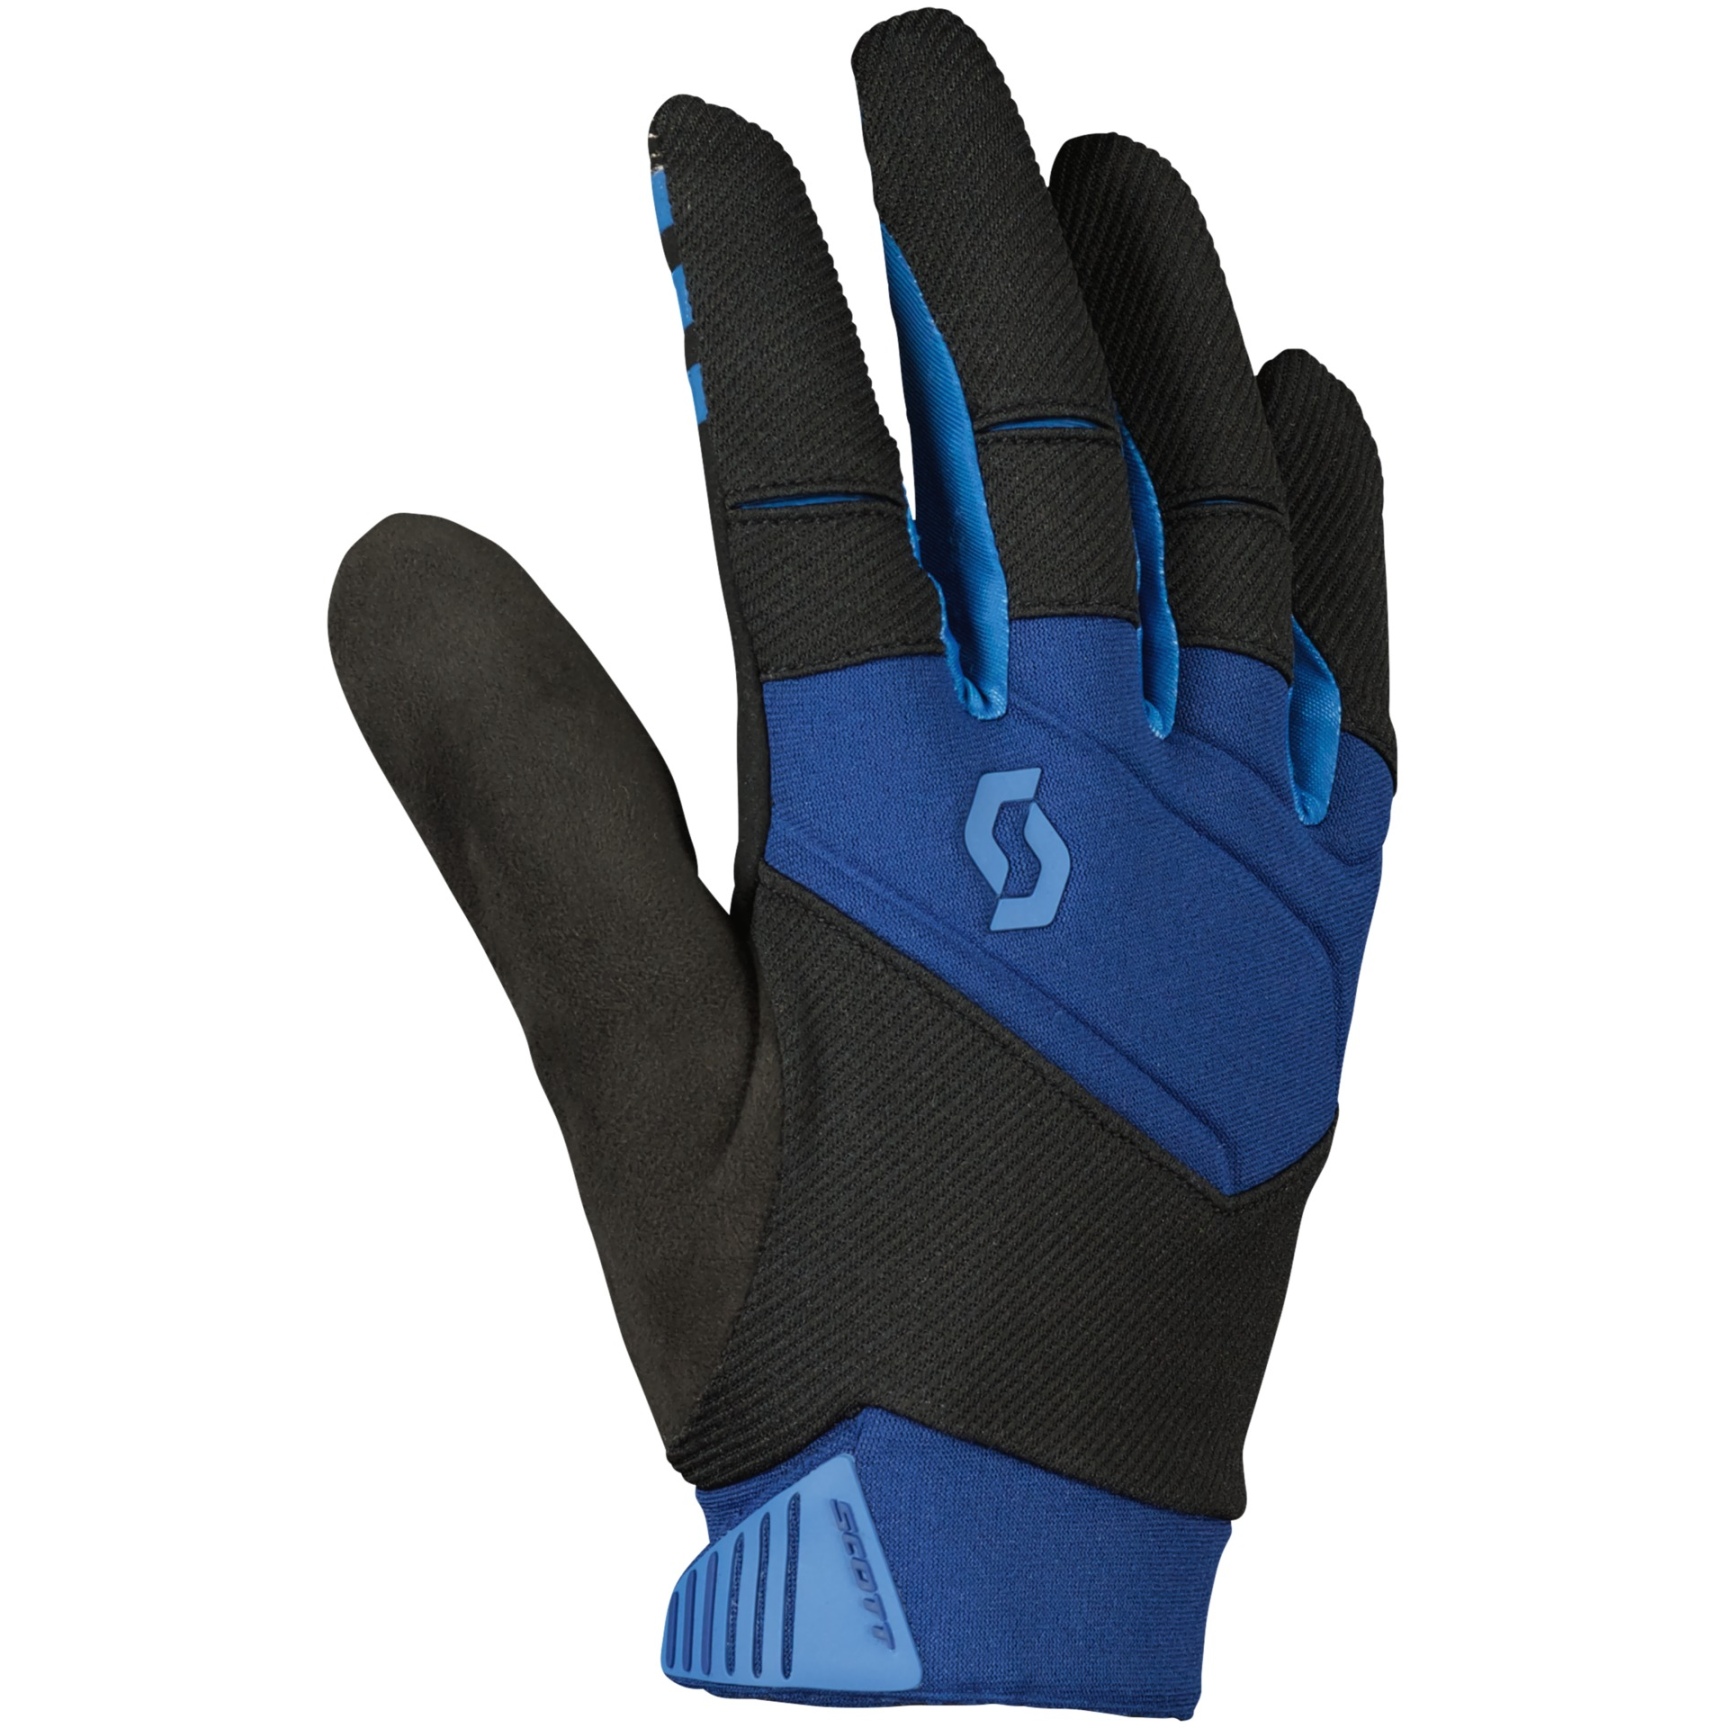 Produktbild von SCOTT Enduro LF Handschuhe - midnight blue/storm blue